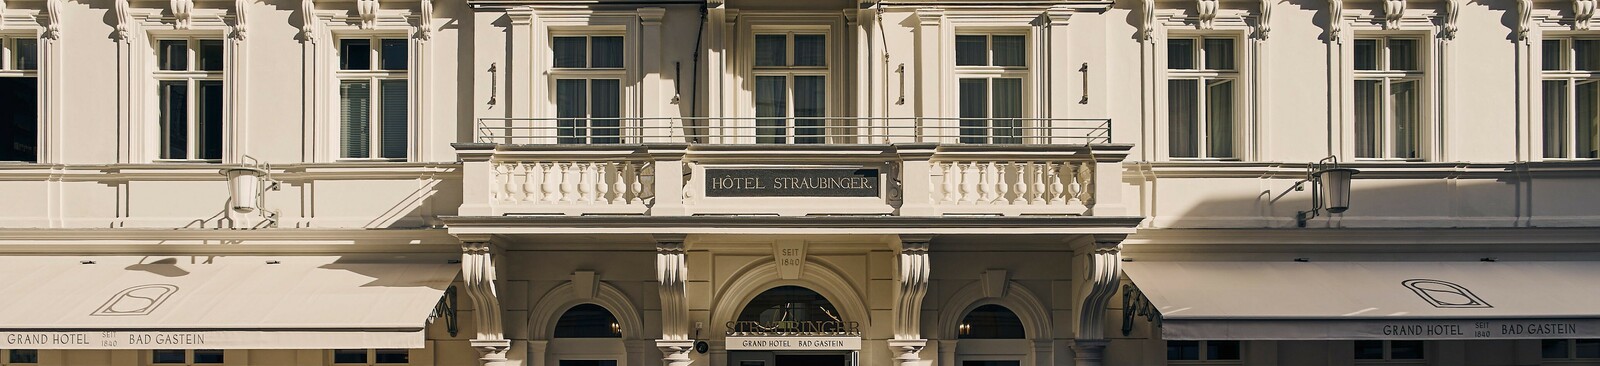 Hotel Straubinger Bad Gastein Außenansicht